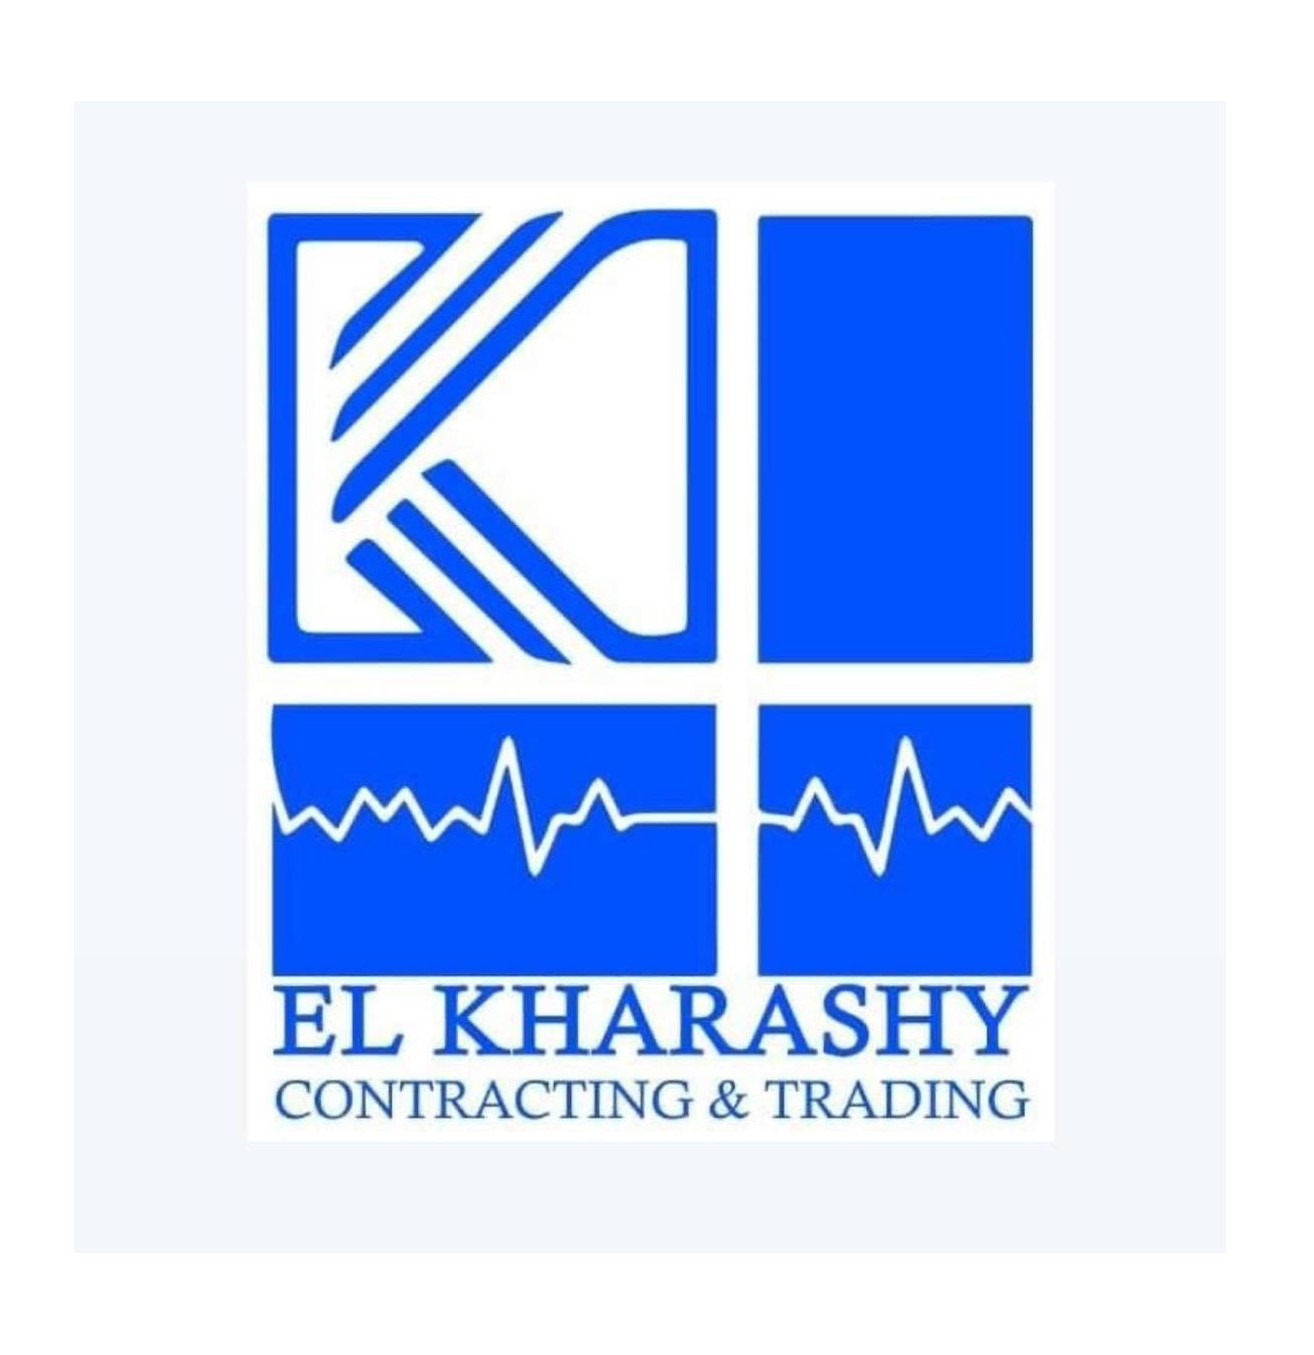 El Kharashy Contracting & Trading company